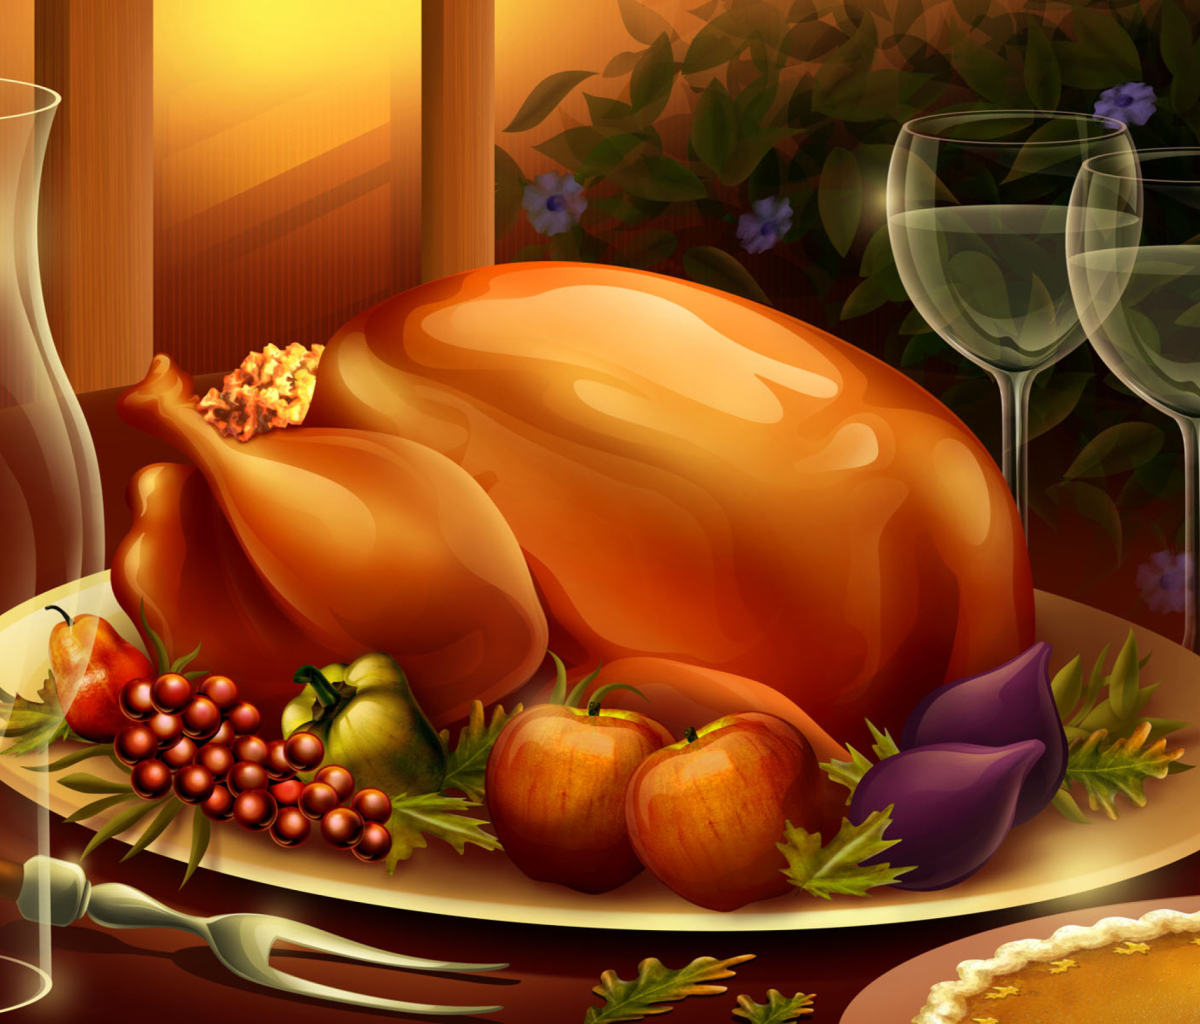 Thanksgiving Feast wallpaper 1200x1024